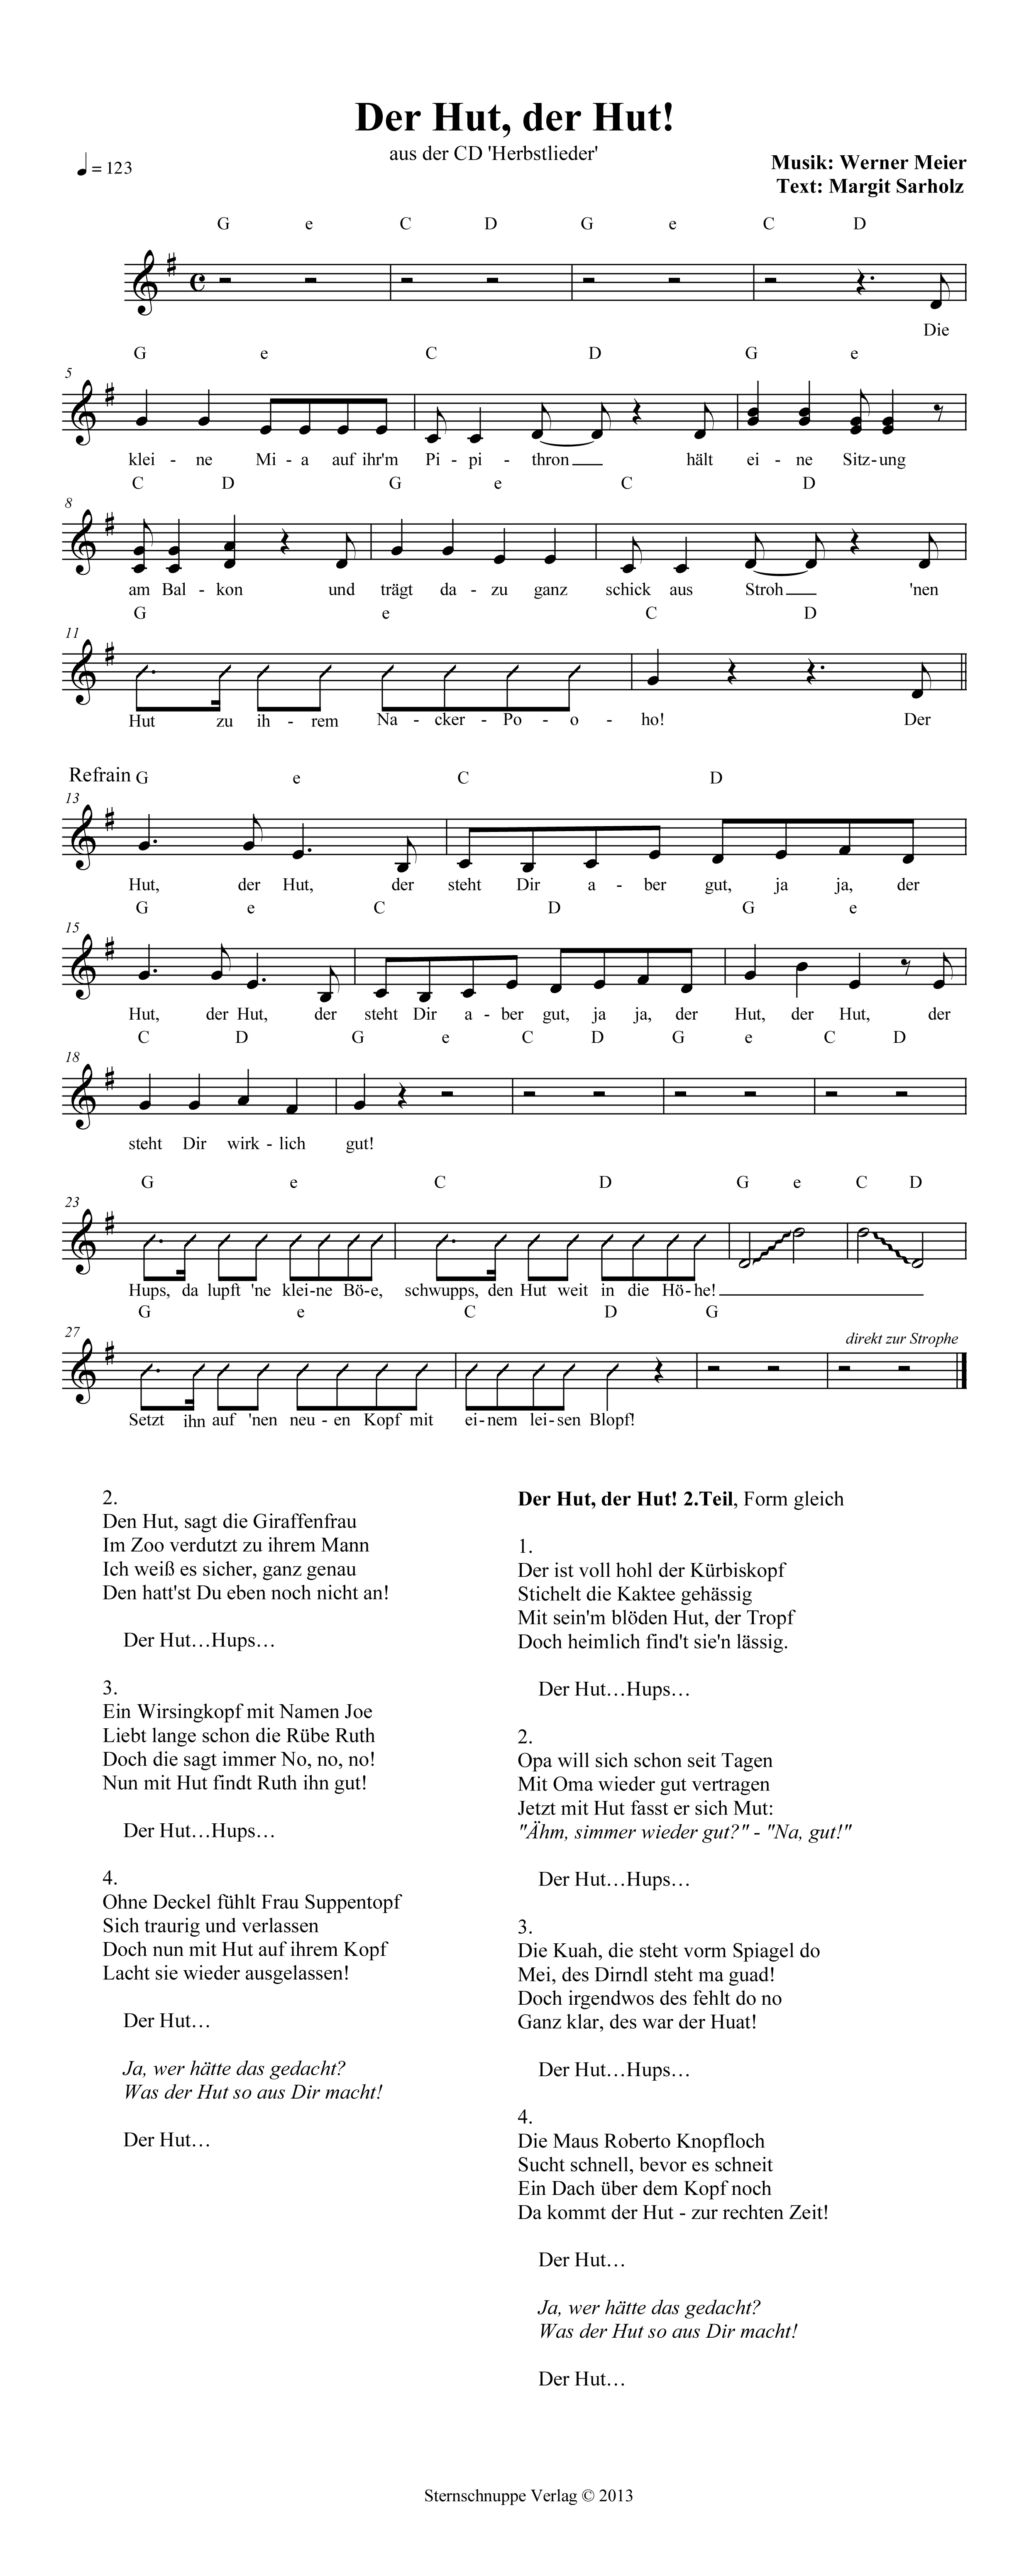 Liedtext, Akkorde und Noten vom Kinderlied Der Hut, der Hut! (Erster Flug)